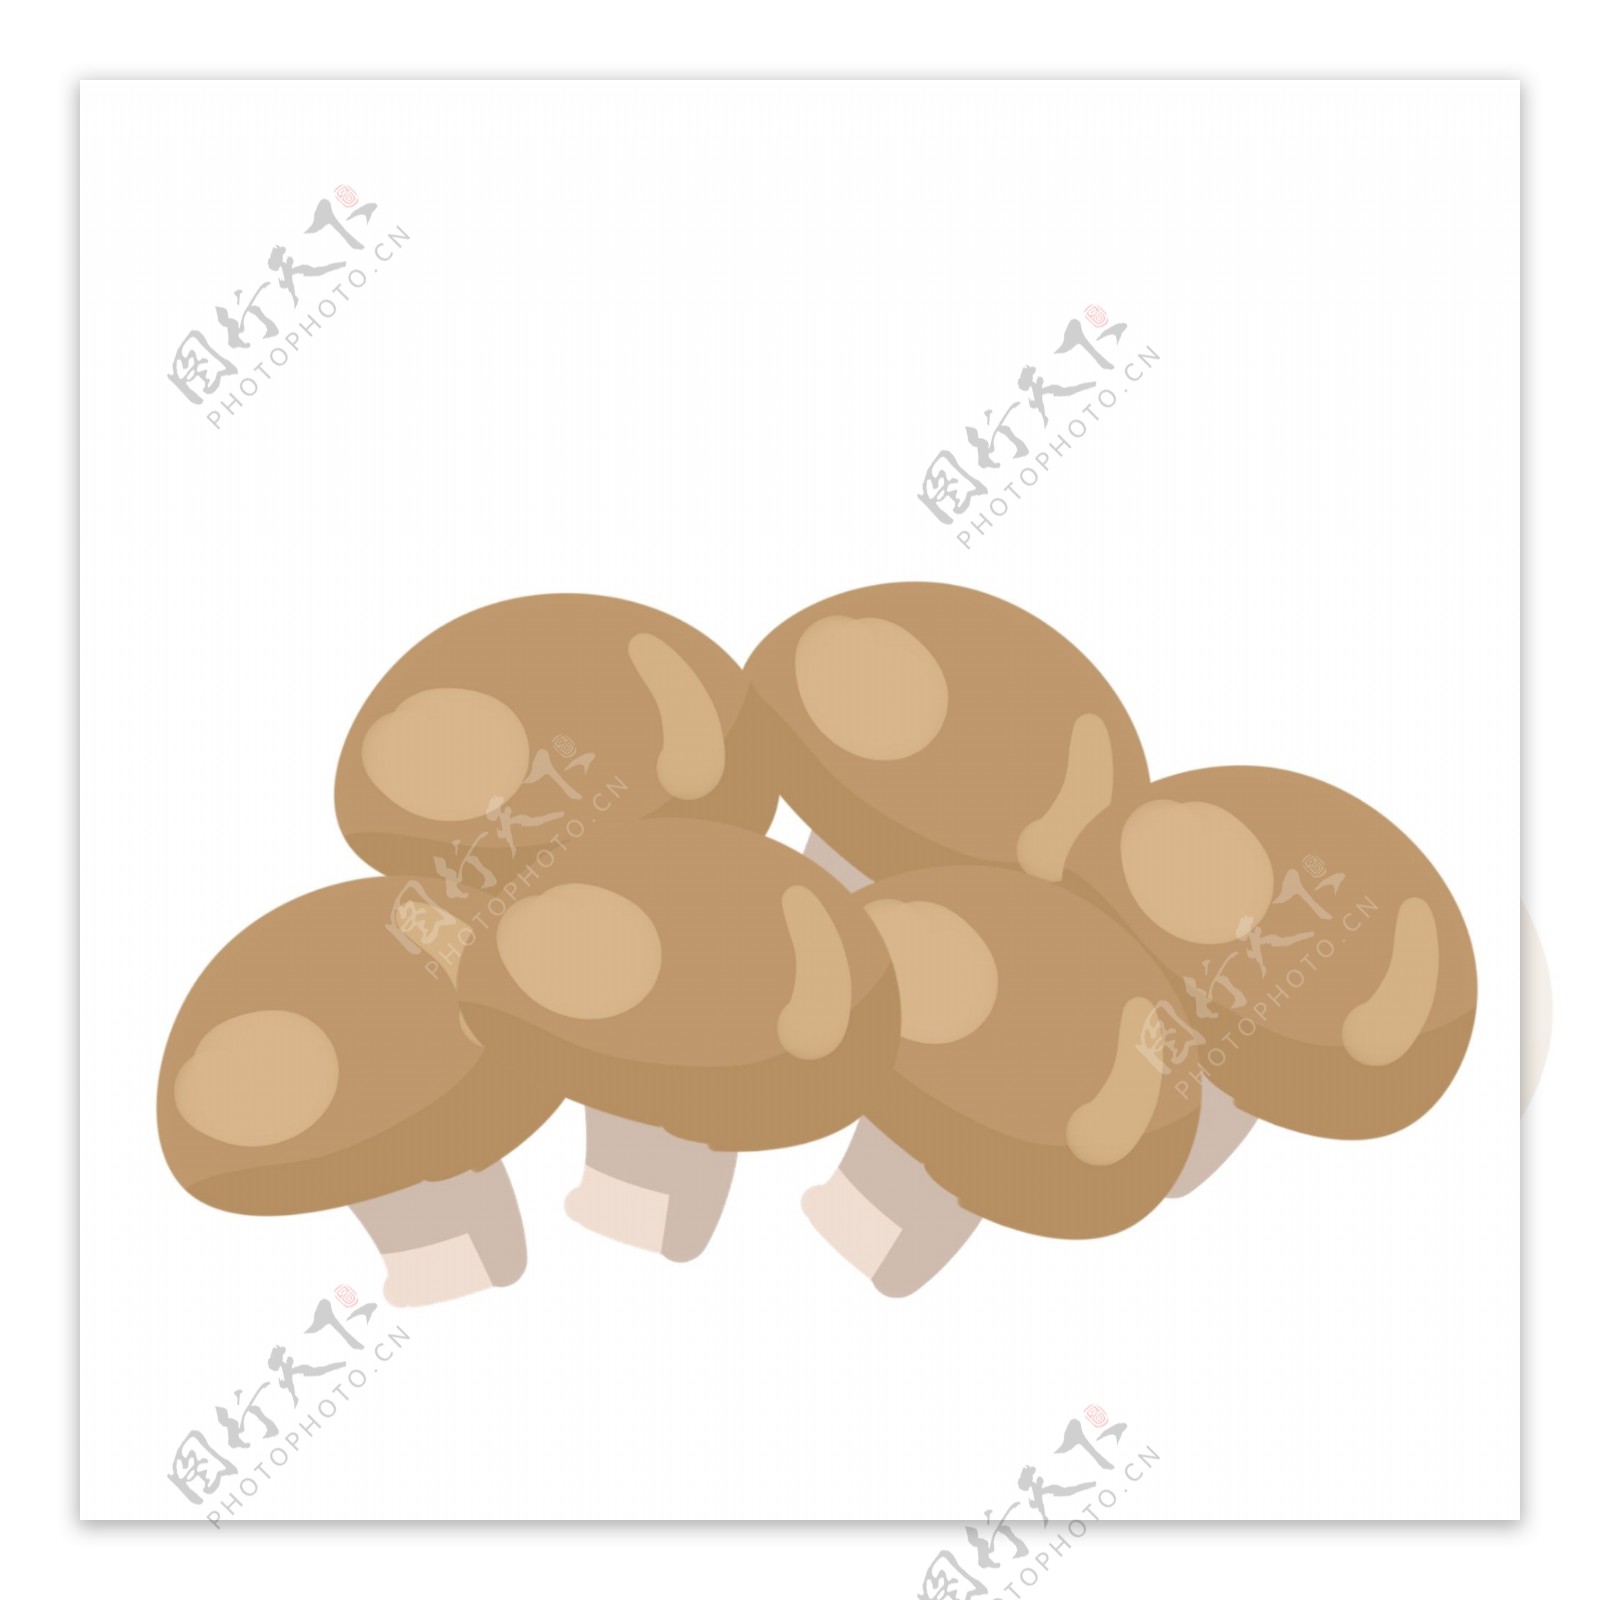 棕色卡通蘑菇